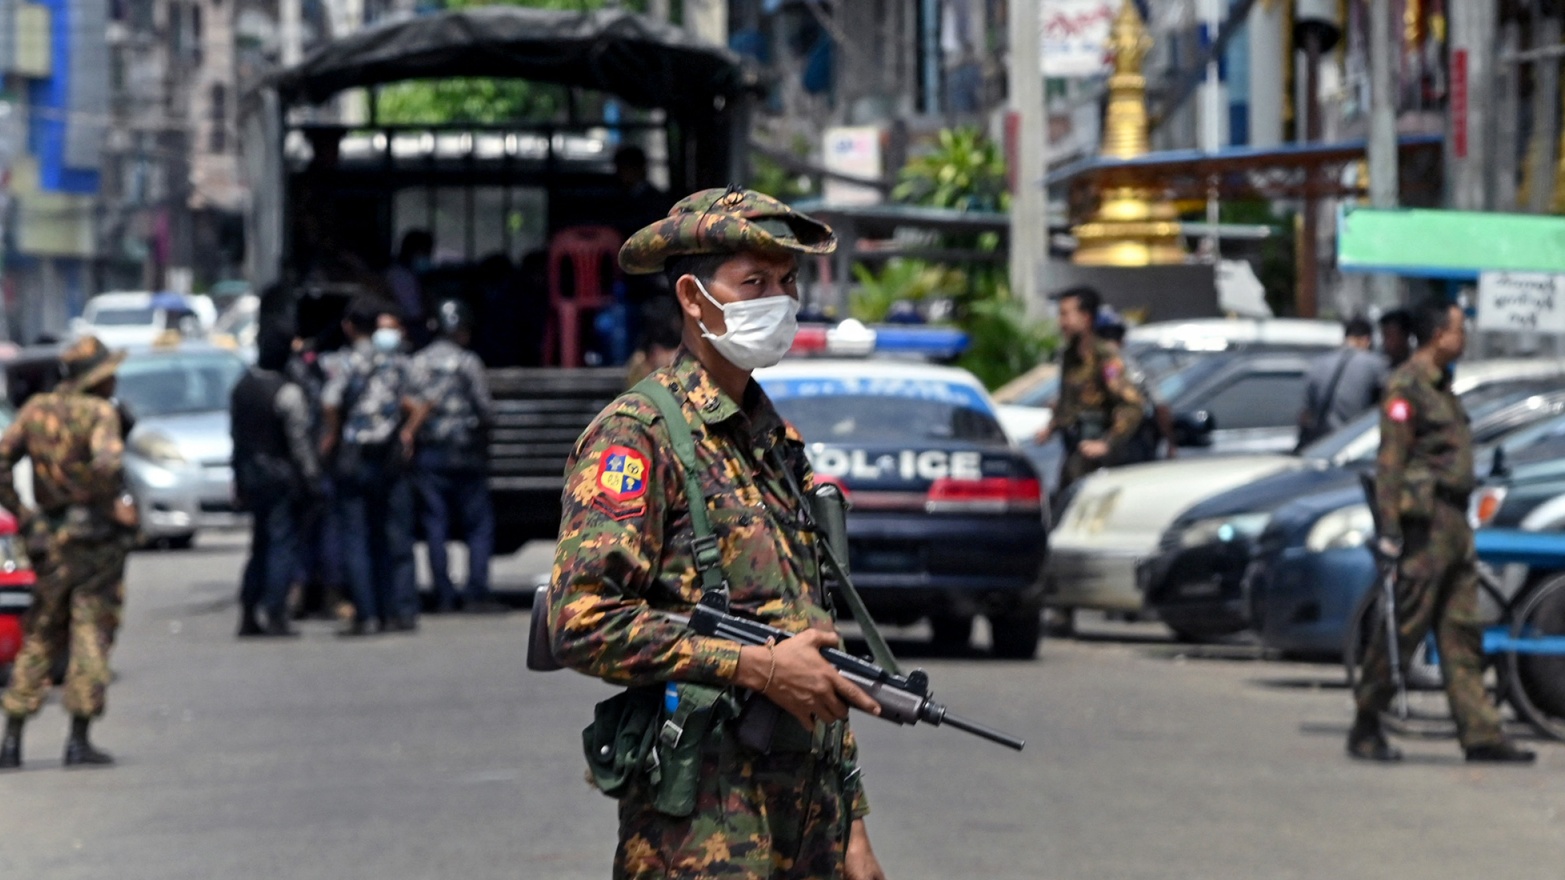 عناصر من الشرطة في شوارع بورما (توضيحية)